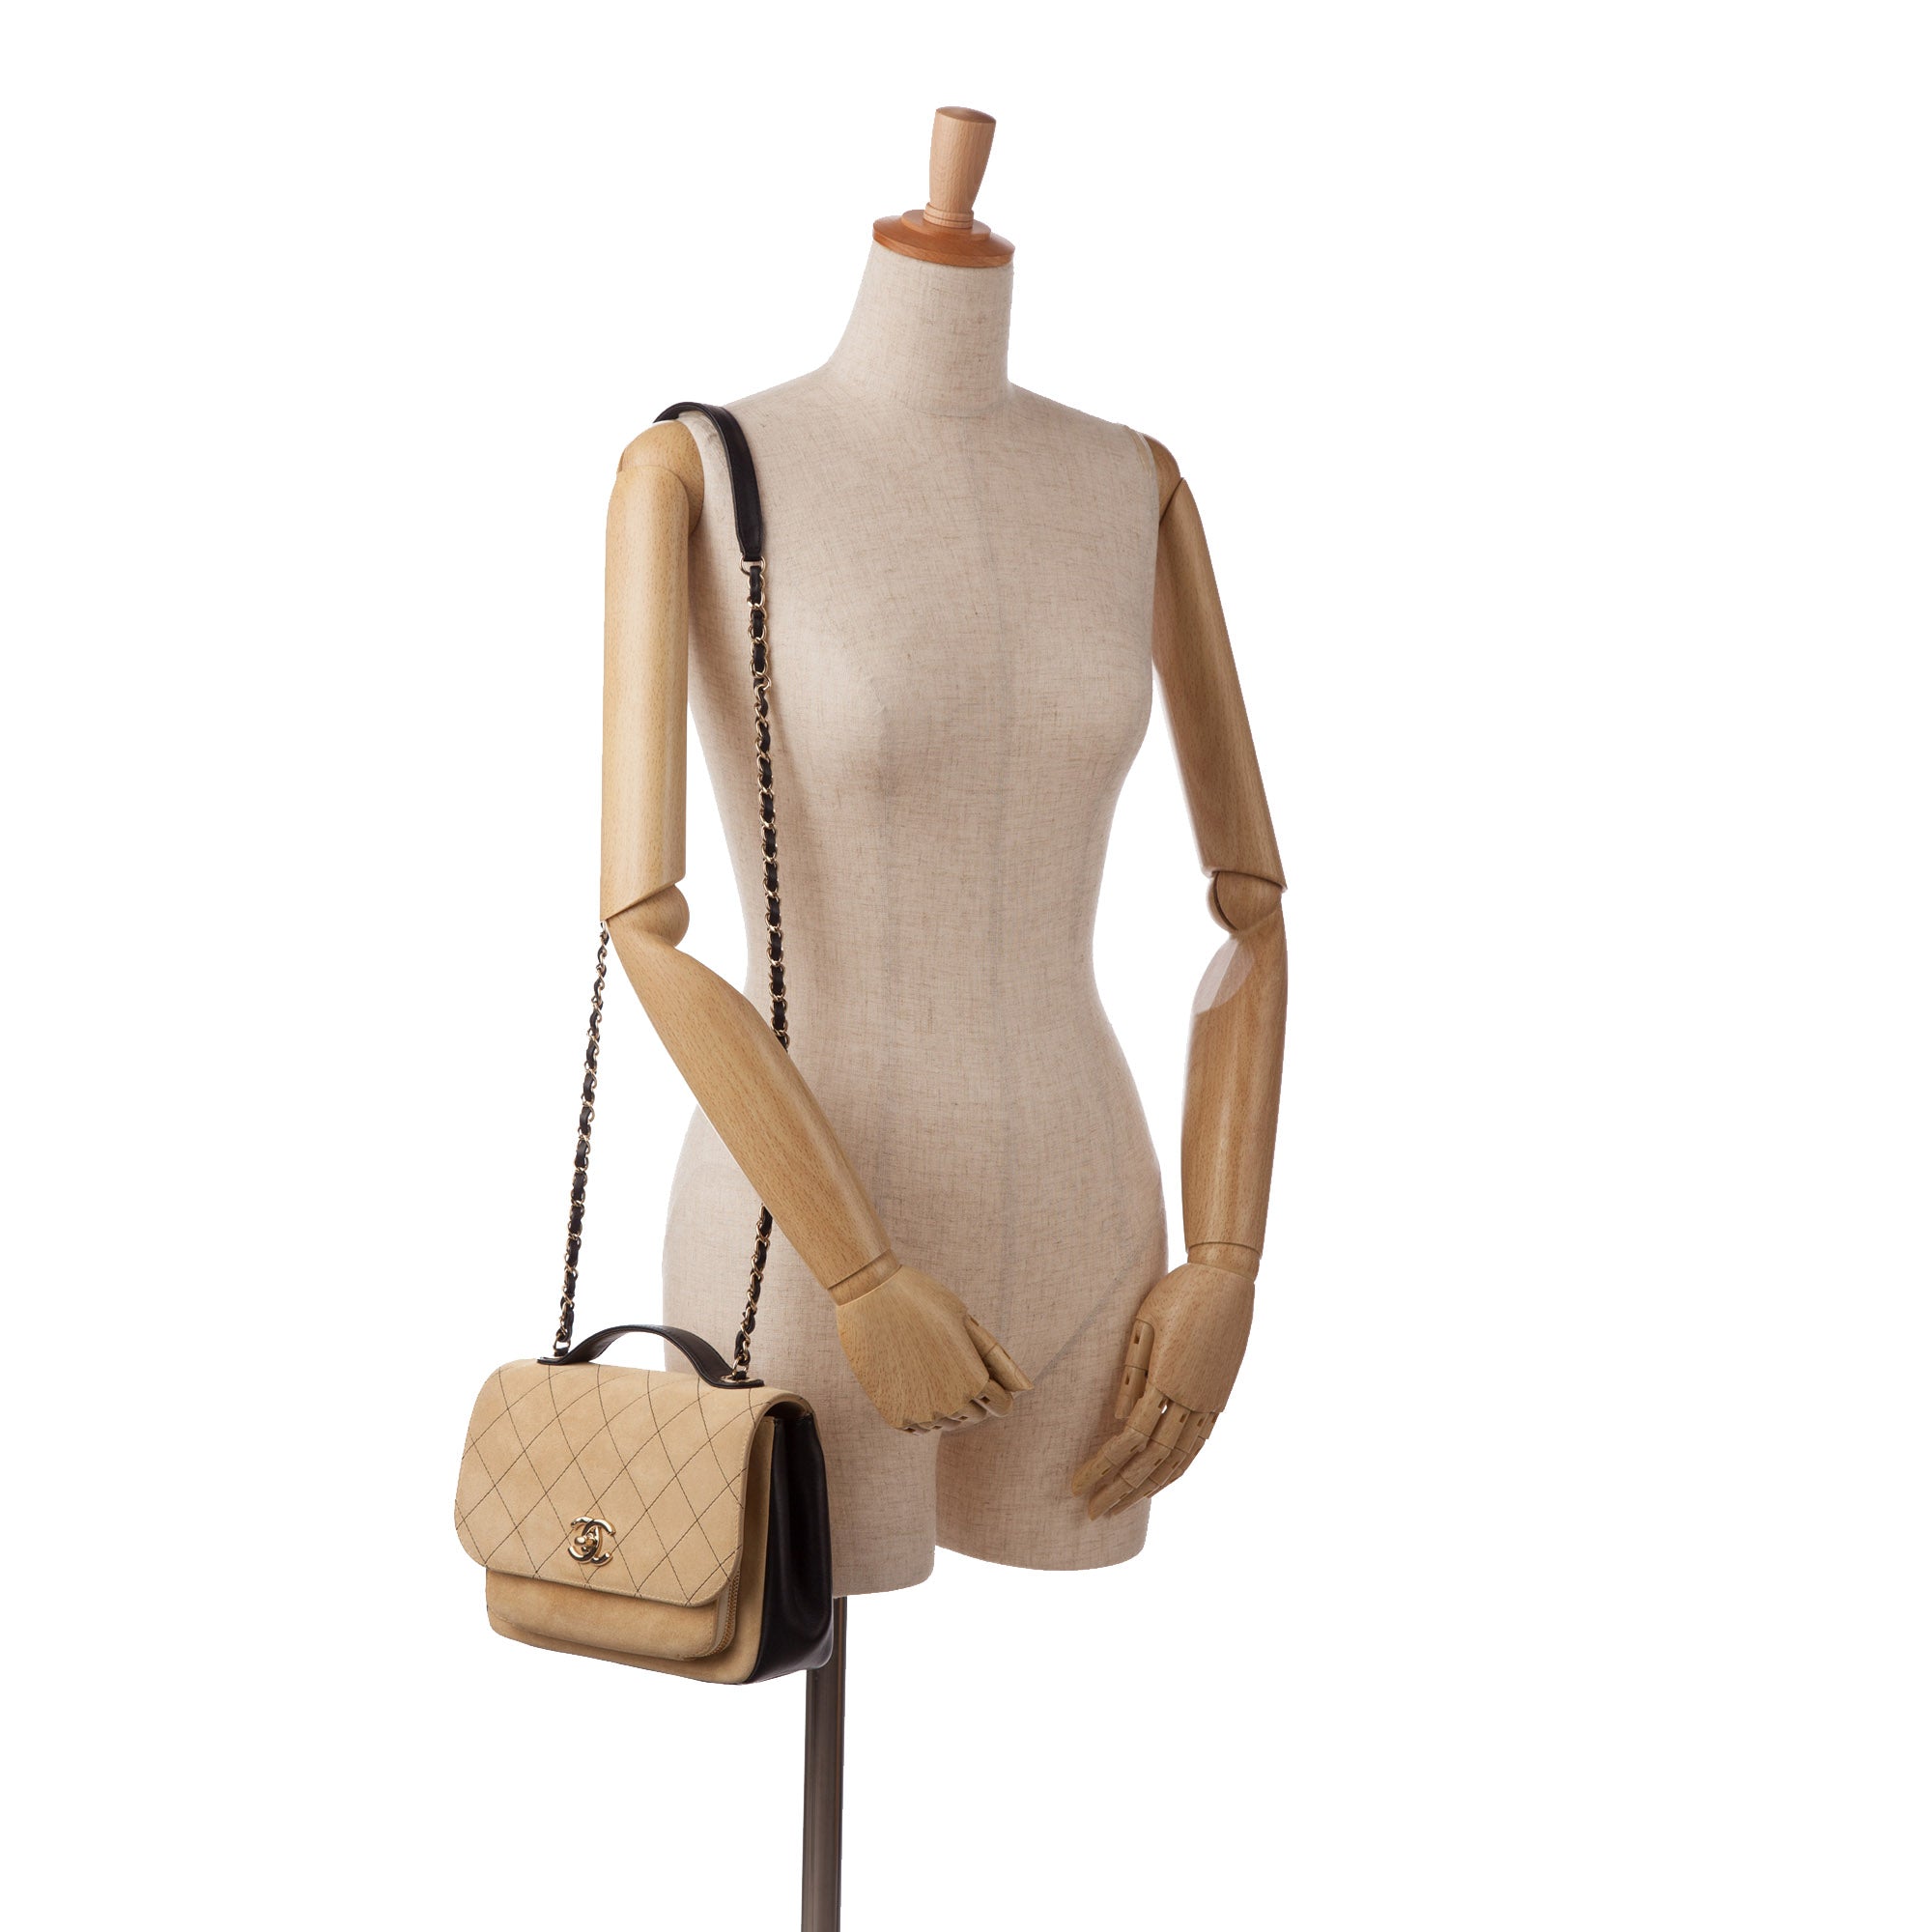 Chanel Large Business Affinity Flap Shoulder Bag